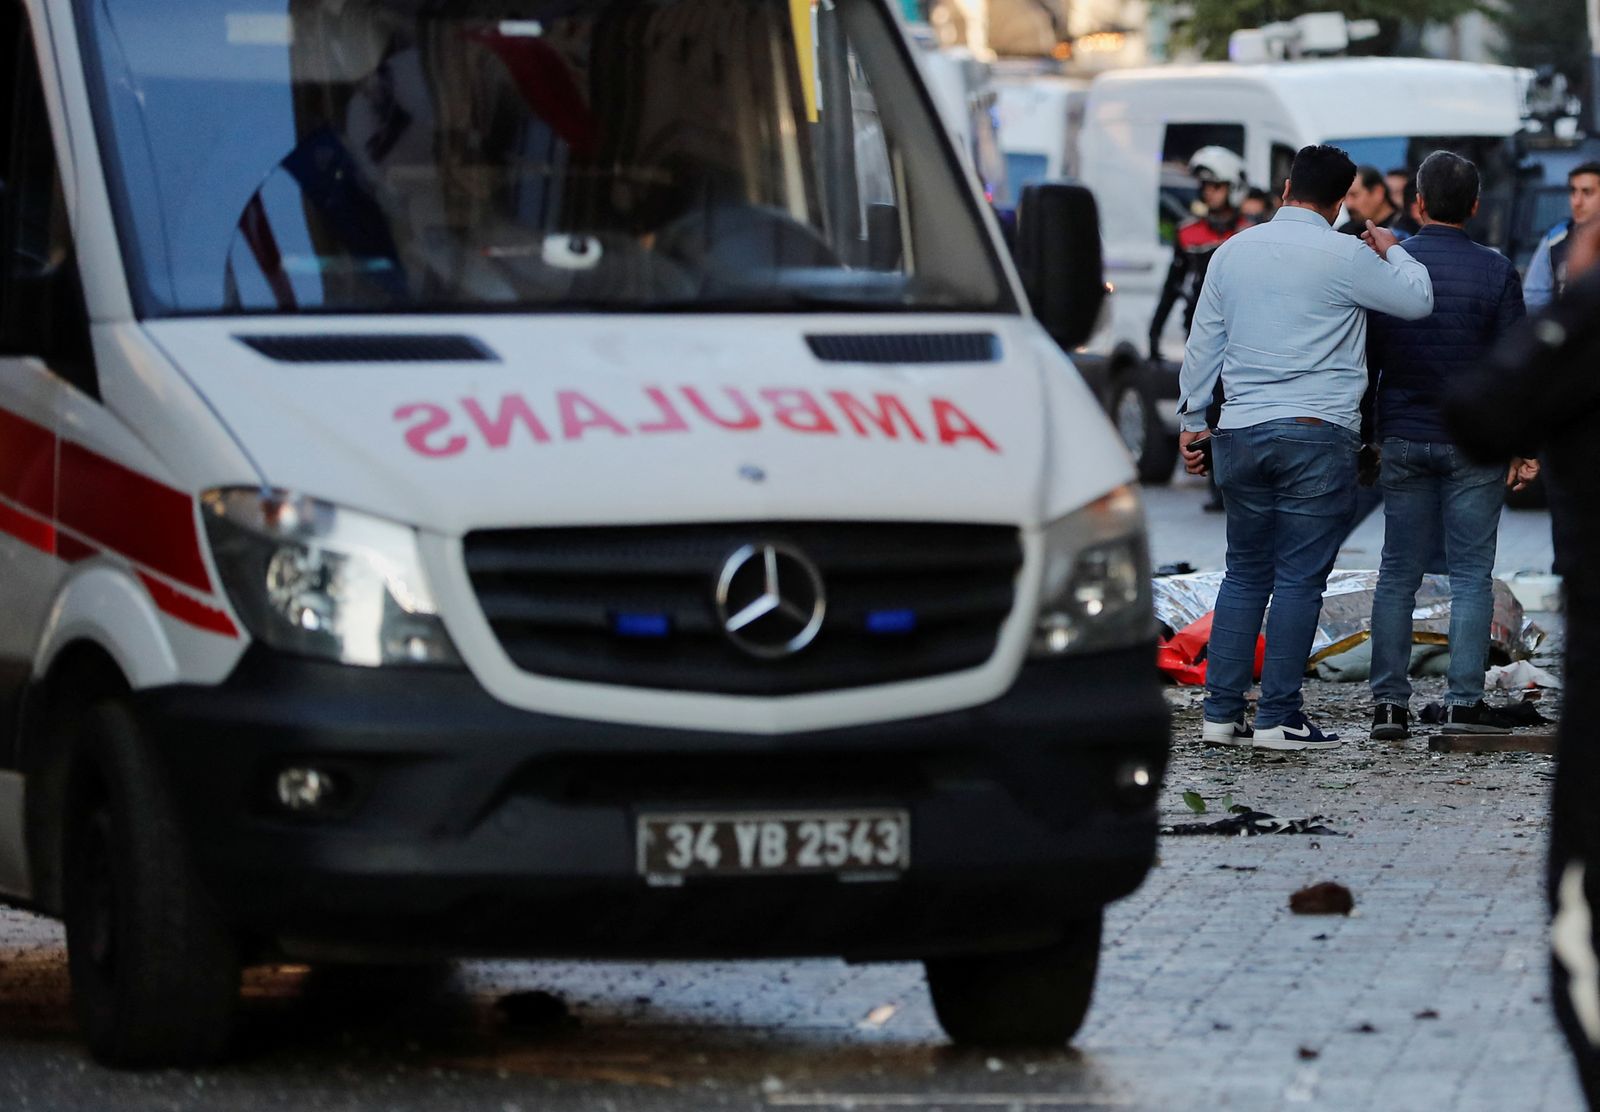 وصول سيارات الإسعاف بالقرب من مكان الحادث بعد انفجار في منطقة تقسيم بوسط إسطنبول، تركيا، 13 نوفمبر 2022. - RUETERS